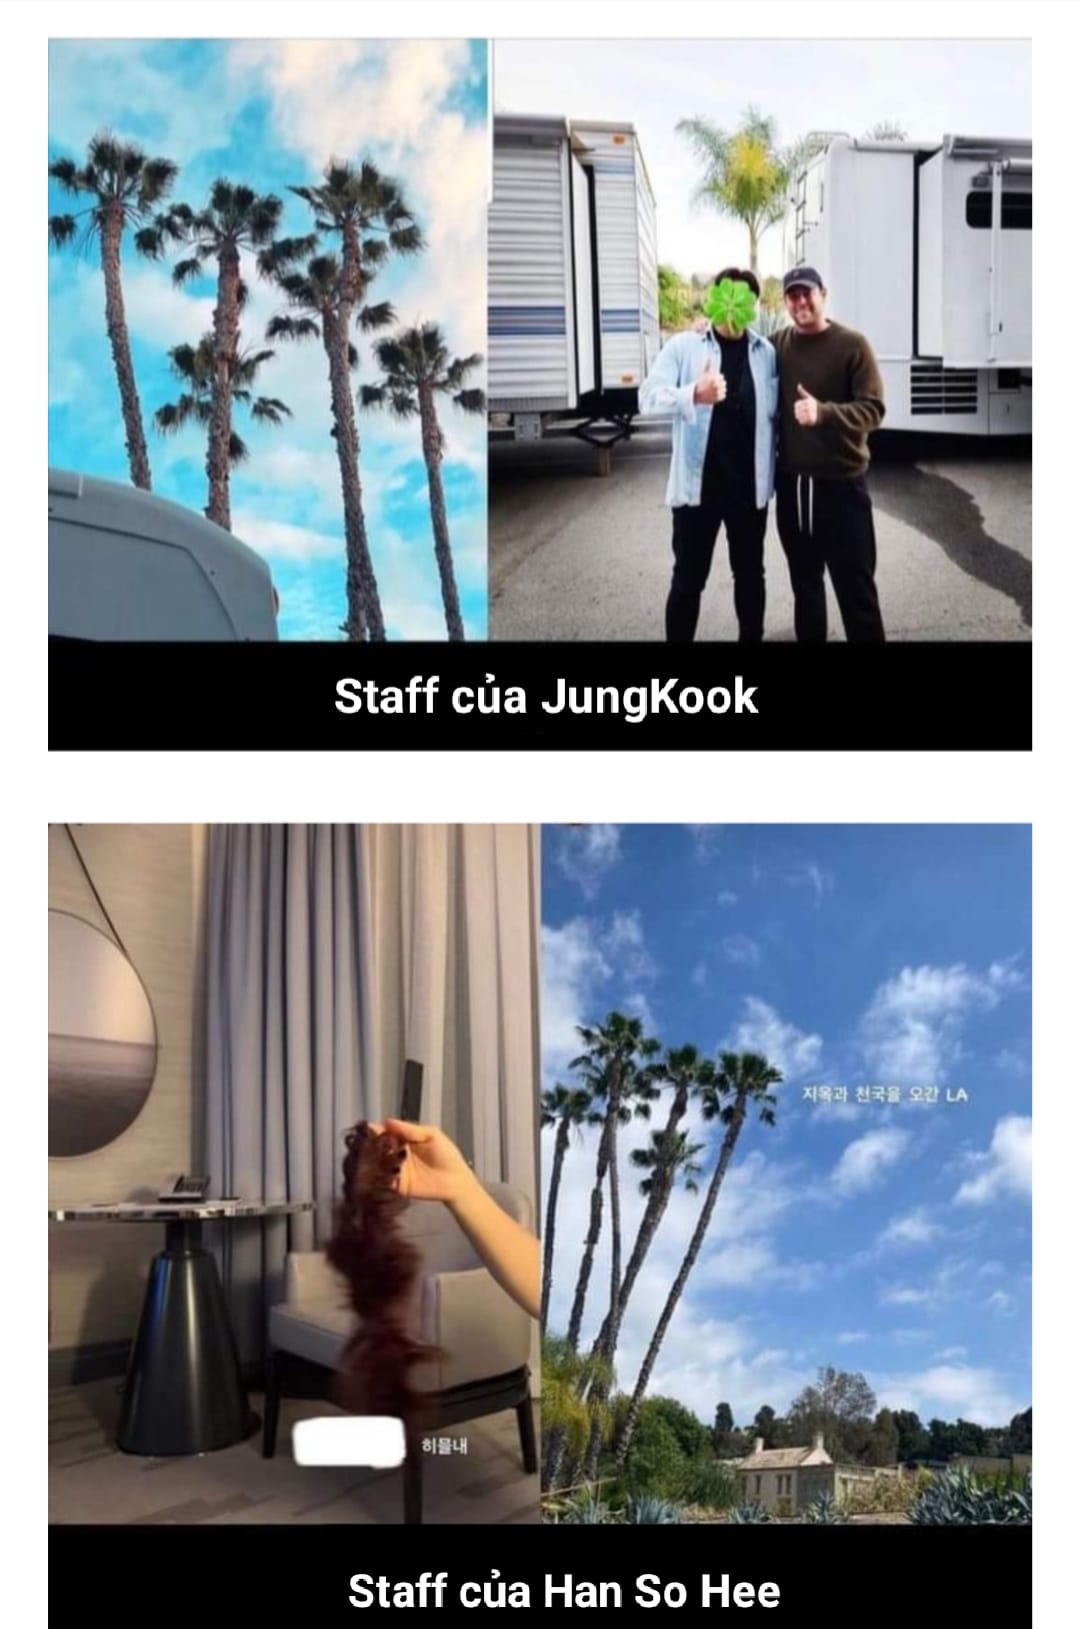 Nhân viên của Jungkook và Han So Hee đăng ảnh có nhiều điểm tương đồng. Ảnh: Instagram